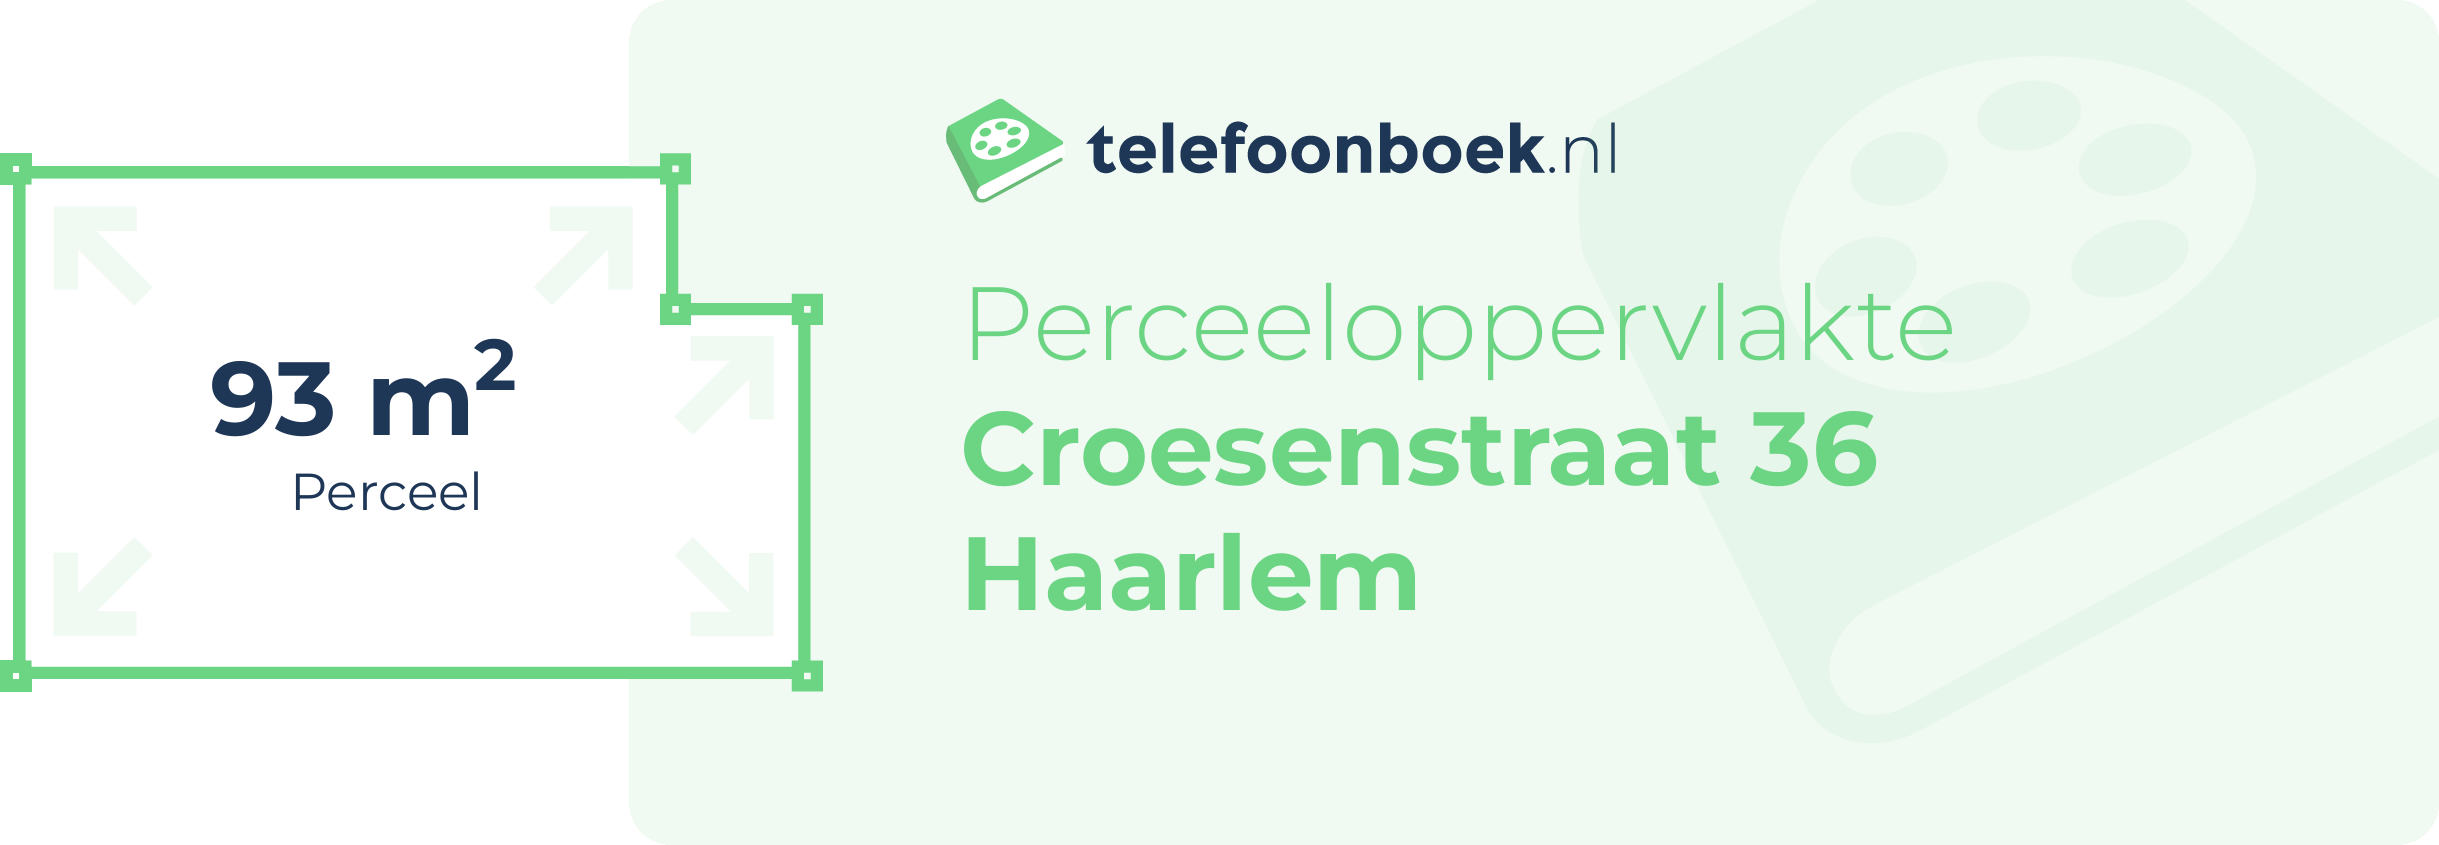 Perceeloppervlakte Croesenstraat 36 Haarlem